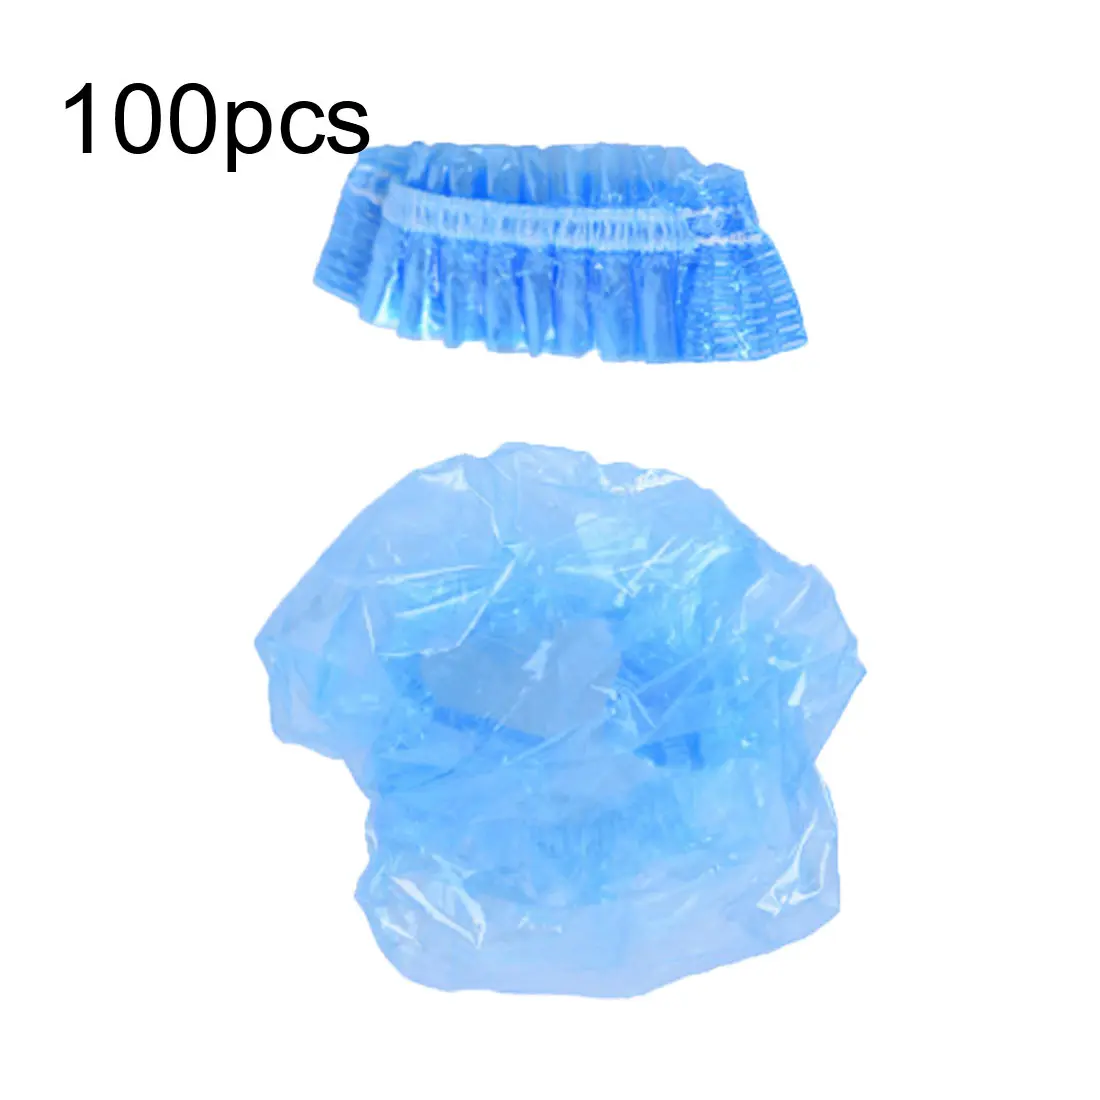 100 шт одноразовый пластиковый водонепроницаемый защитный чехол для ушей s салонный парикмахерский краситель защита для защиты душевой колпачок инструмент - Цвет: Синий